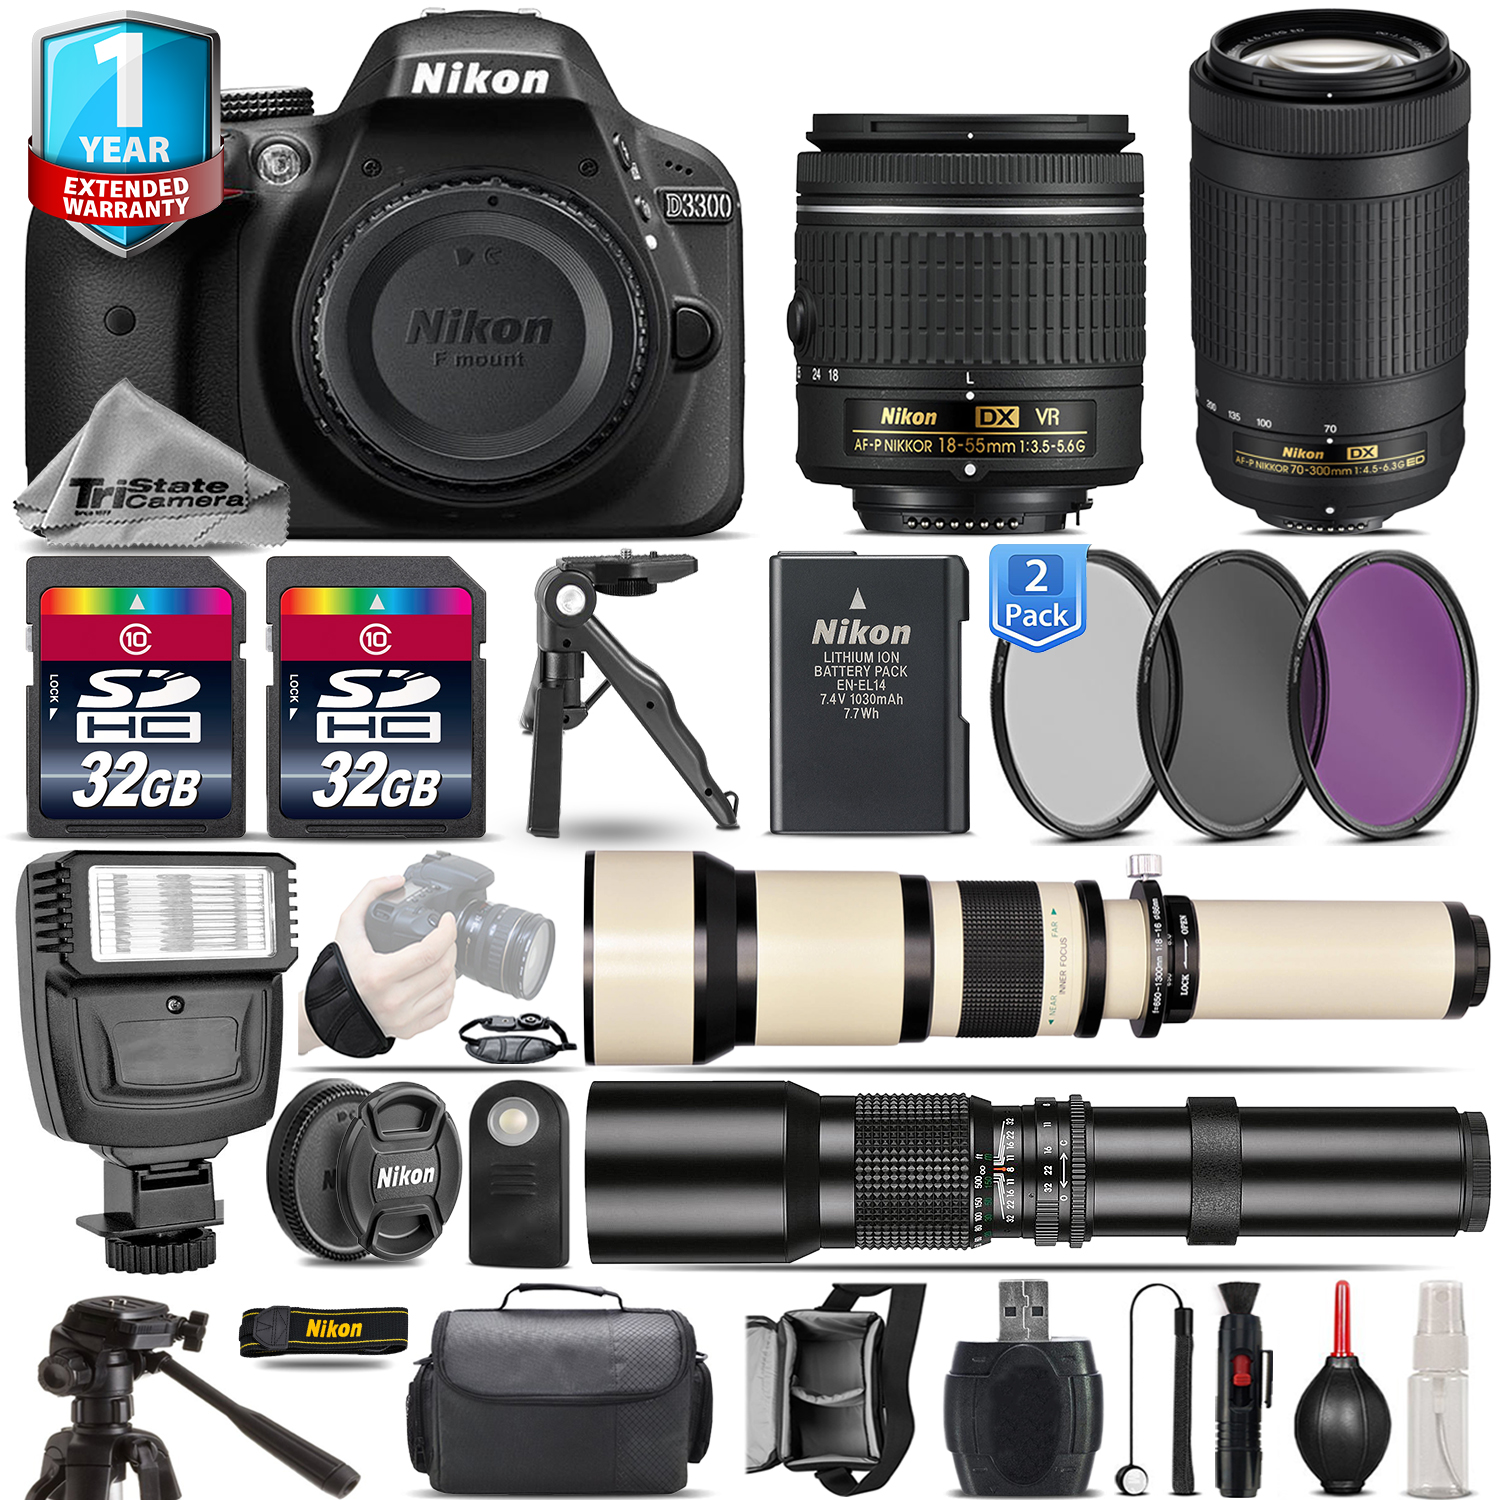 D3300 DSLR Camera + 18-55mm VR + 70-300mm + Flash + 1yr Warranty + 64GB *FREE SHIPPING*